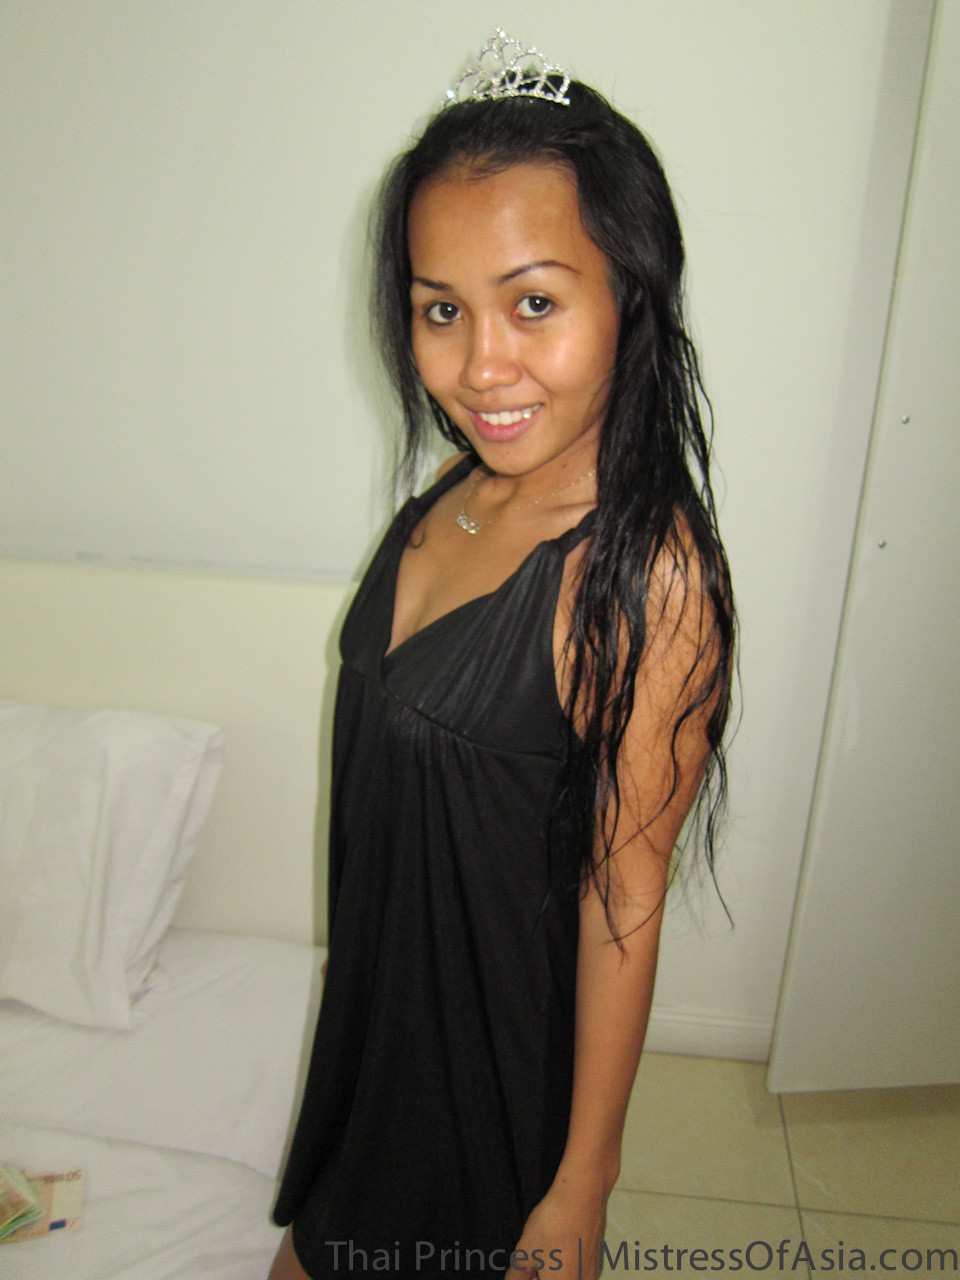 Princesa tailandesa con vestido después del baño
 #67341630